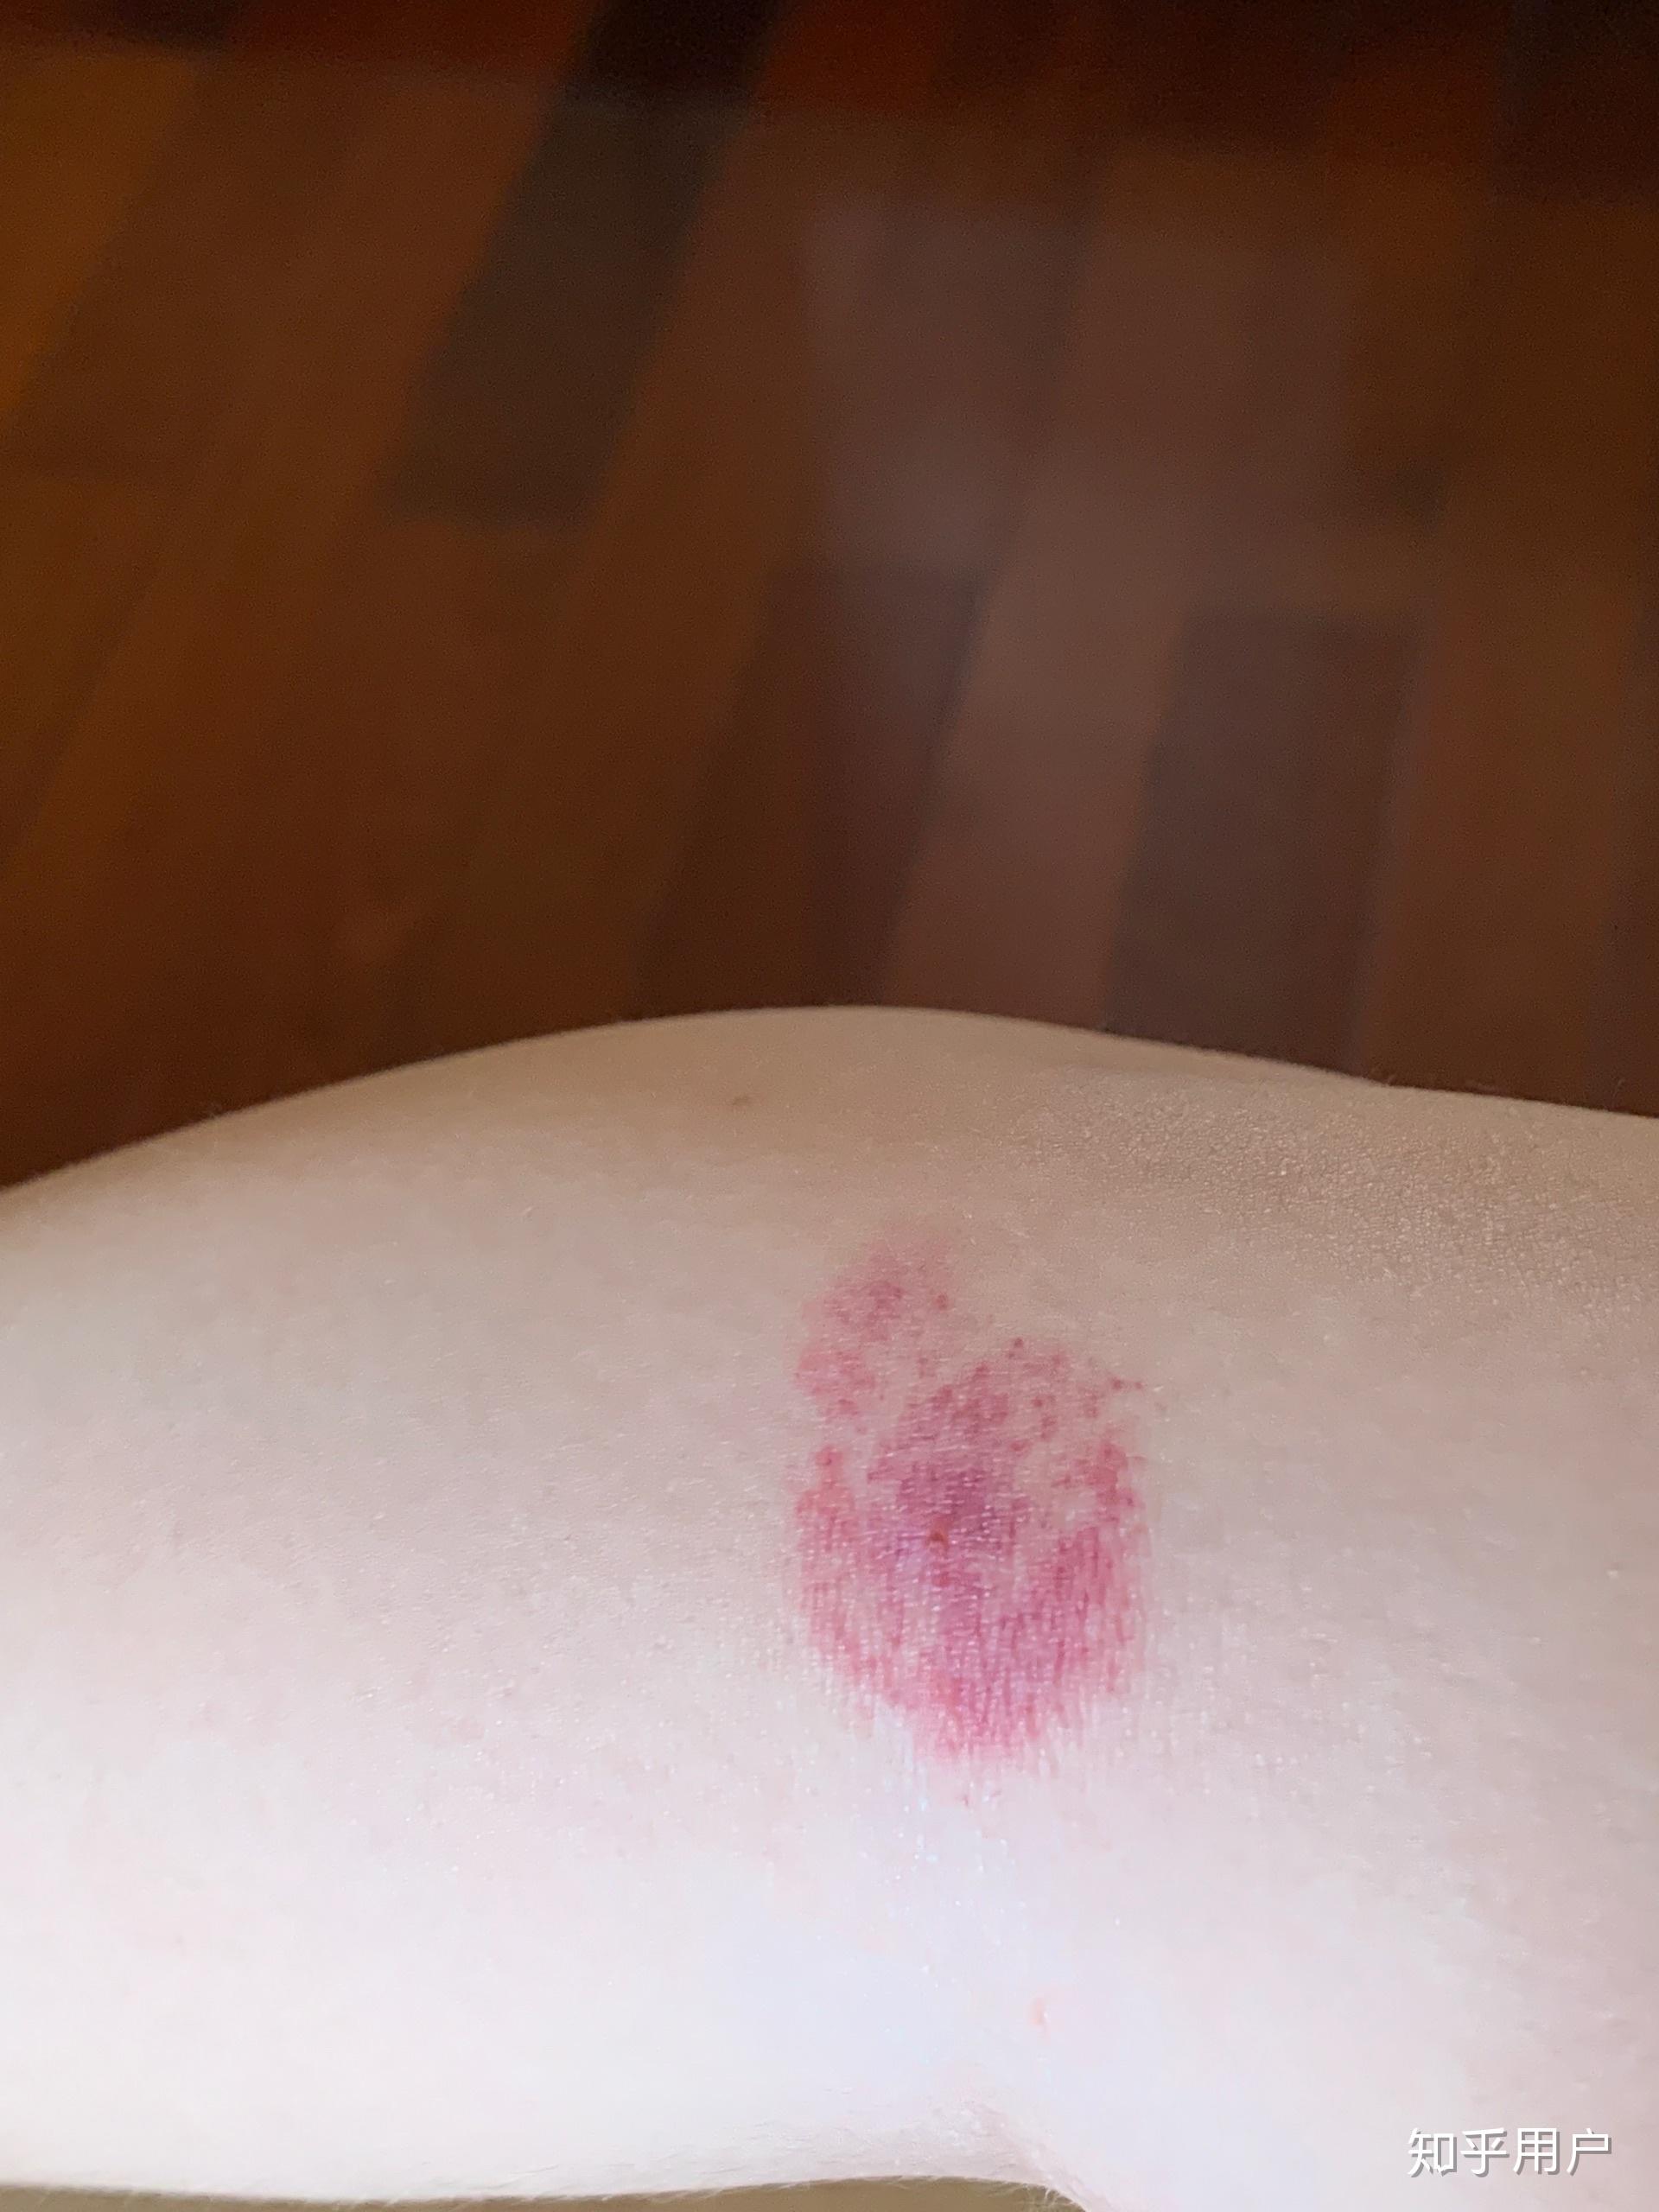 为什么我被蚊子咬了之后皮肤会变成类似淤青的紫红色,消退的很慢,肿的